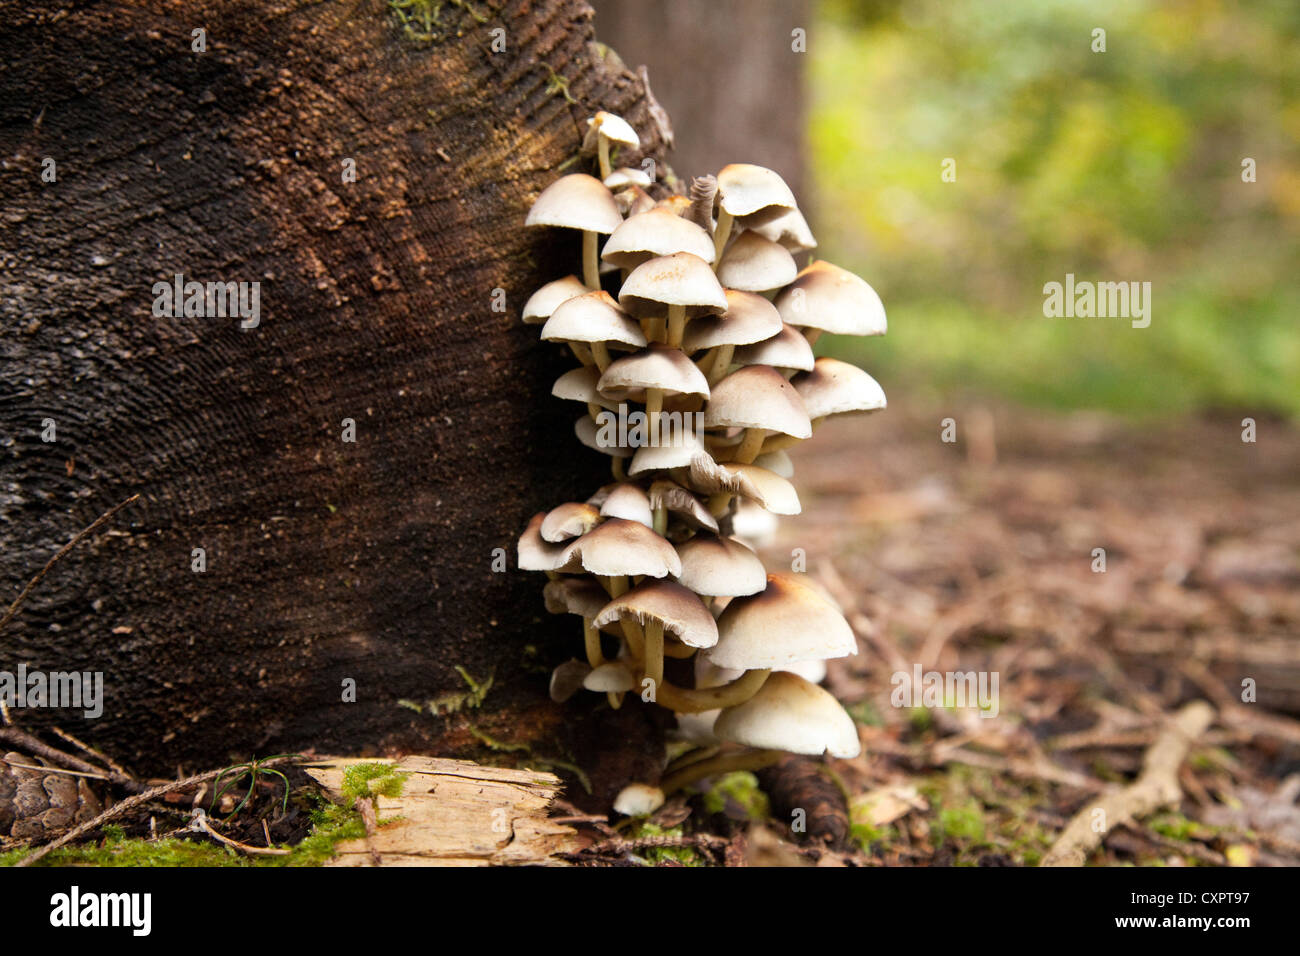 Teneur en soufre ( champignons touffe Hypholoma fasciculare ), champignons poussant sur un tronc d'arbre dans des régions boisées tempérées, Suffolk, Angleterre, Royaume-Uni Banque D'Images